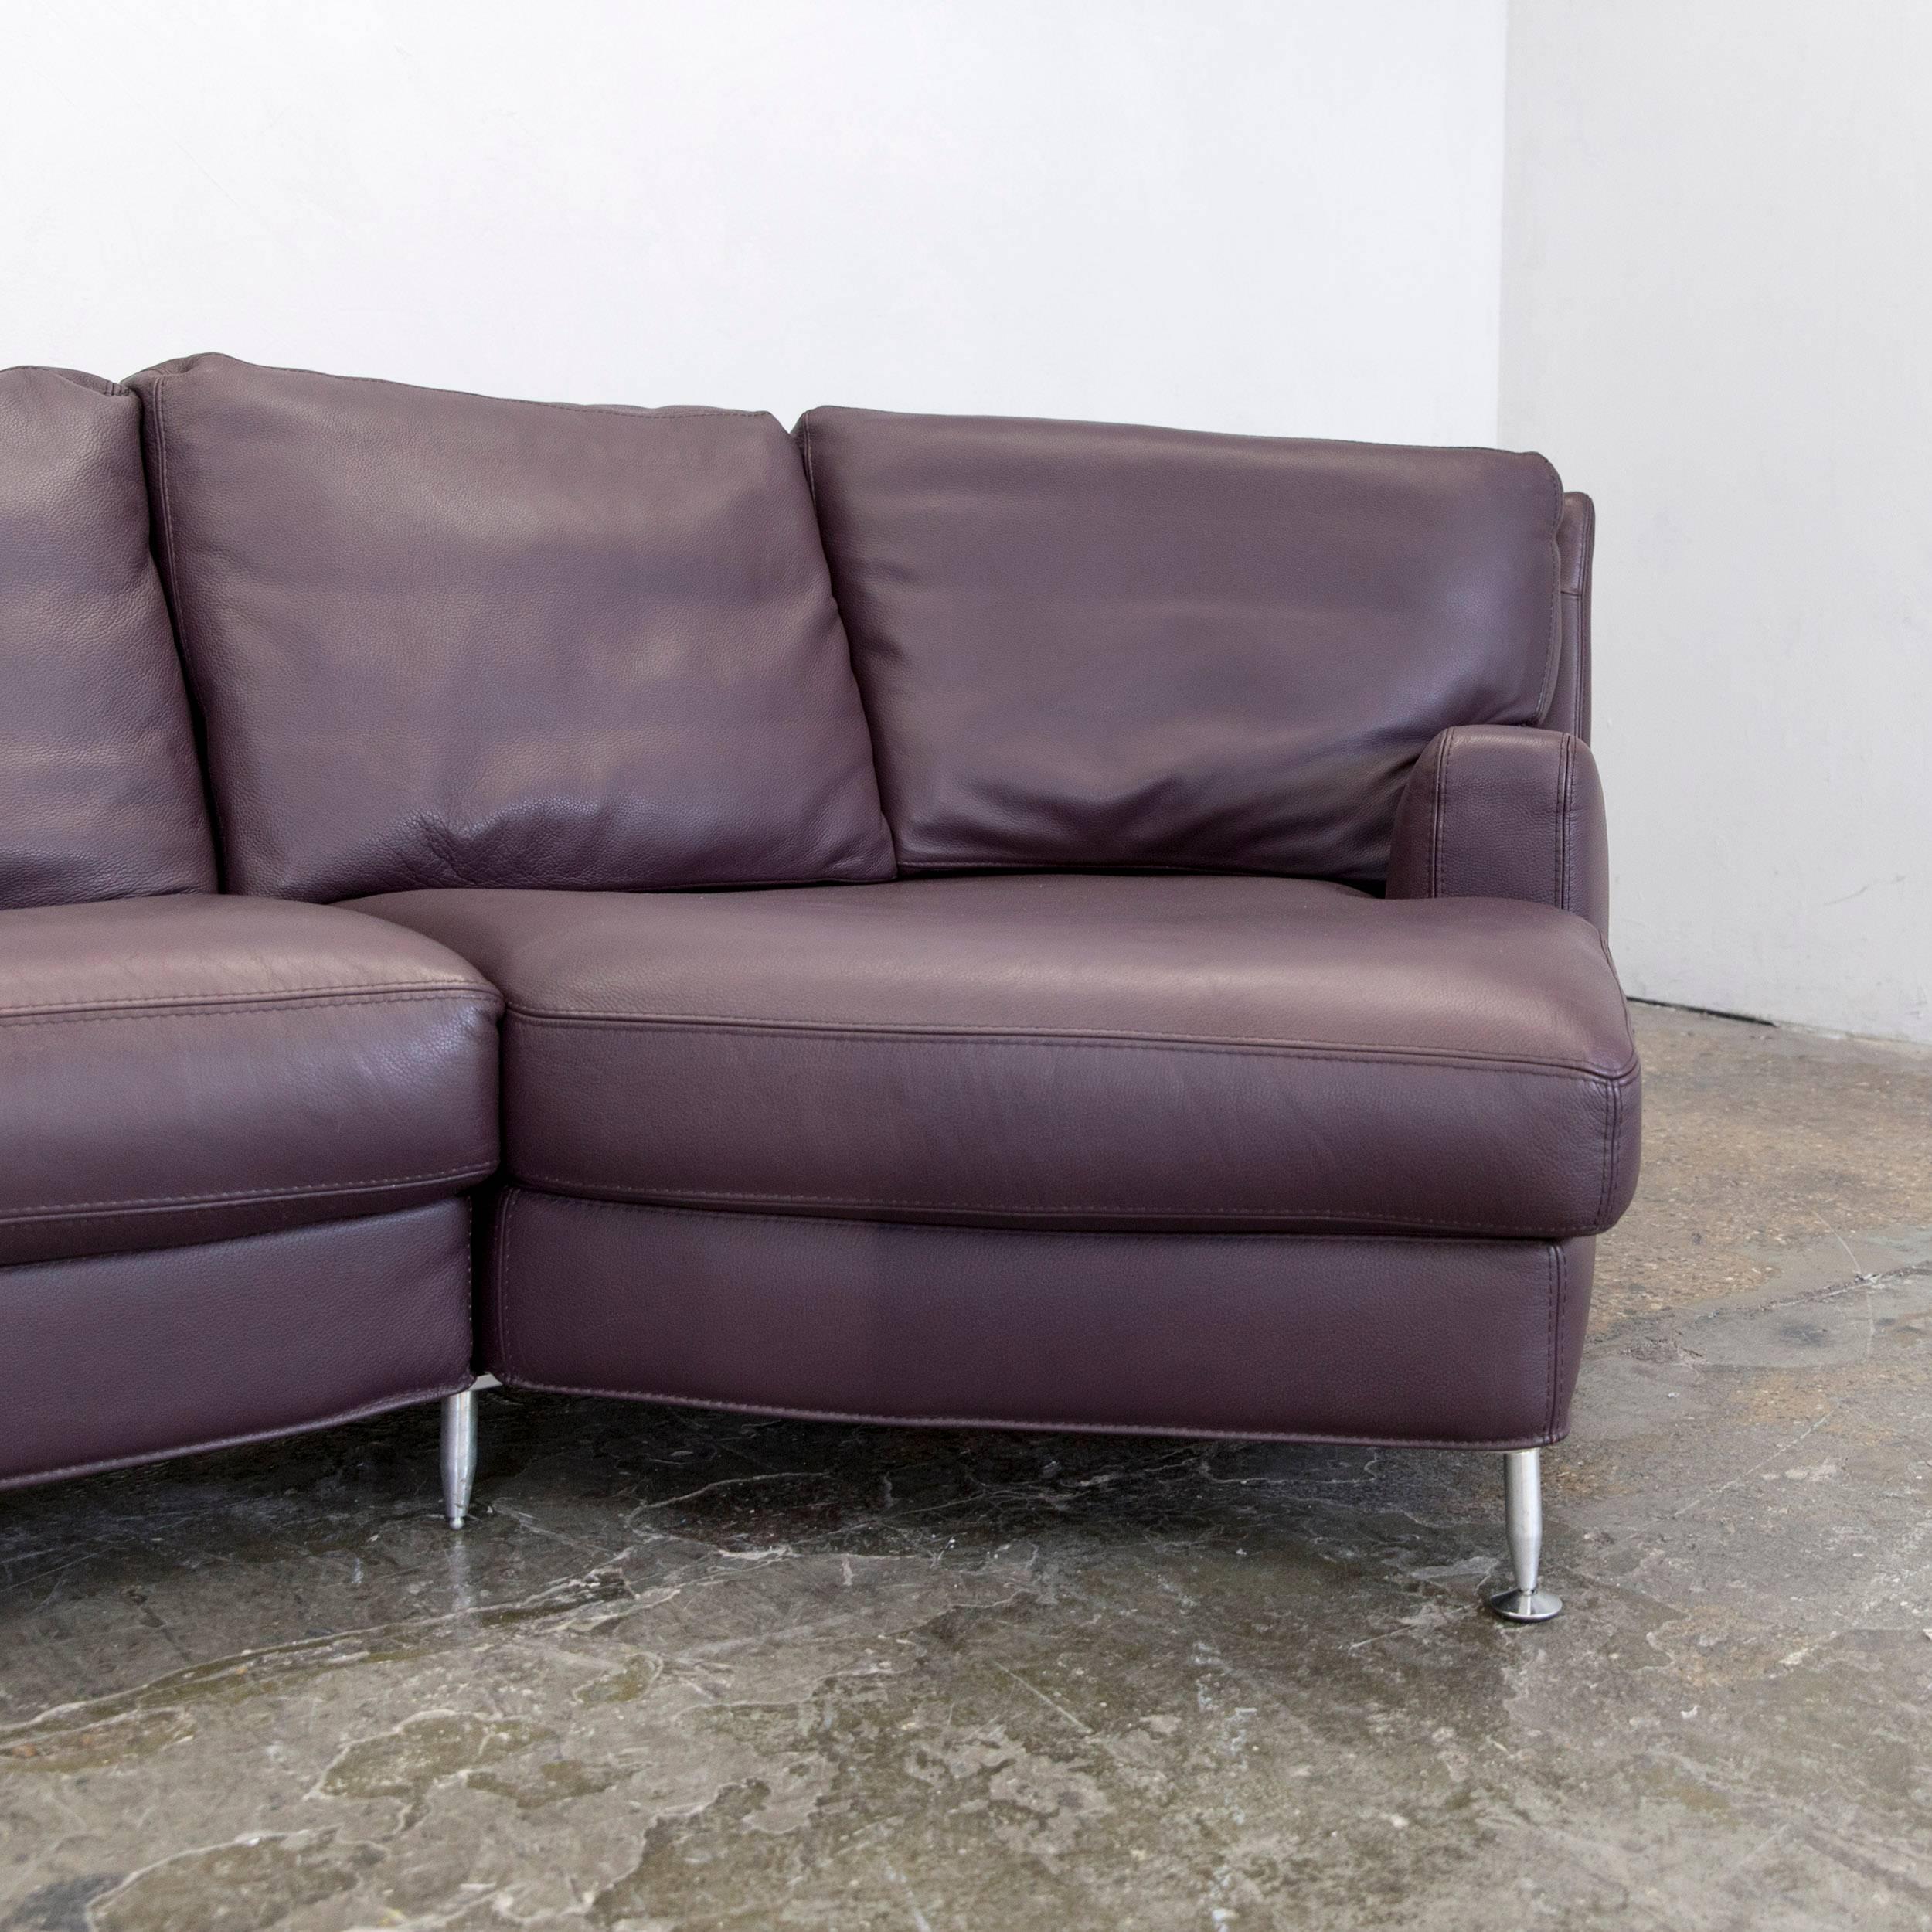 German Aubergine Violet Corner Sofa Couch Modern Design